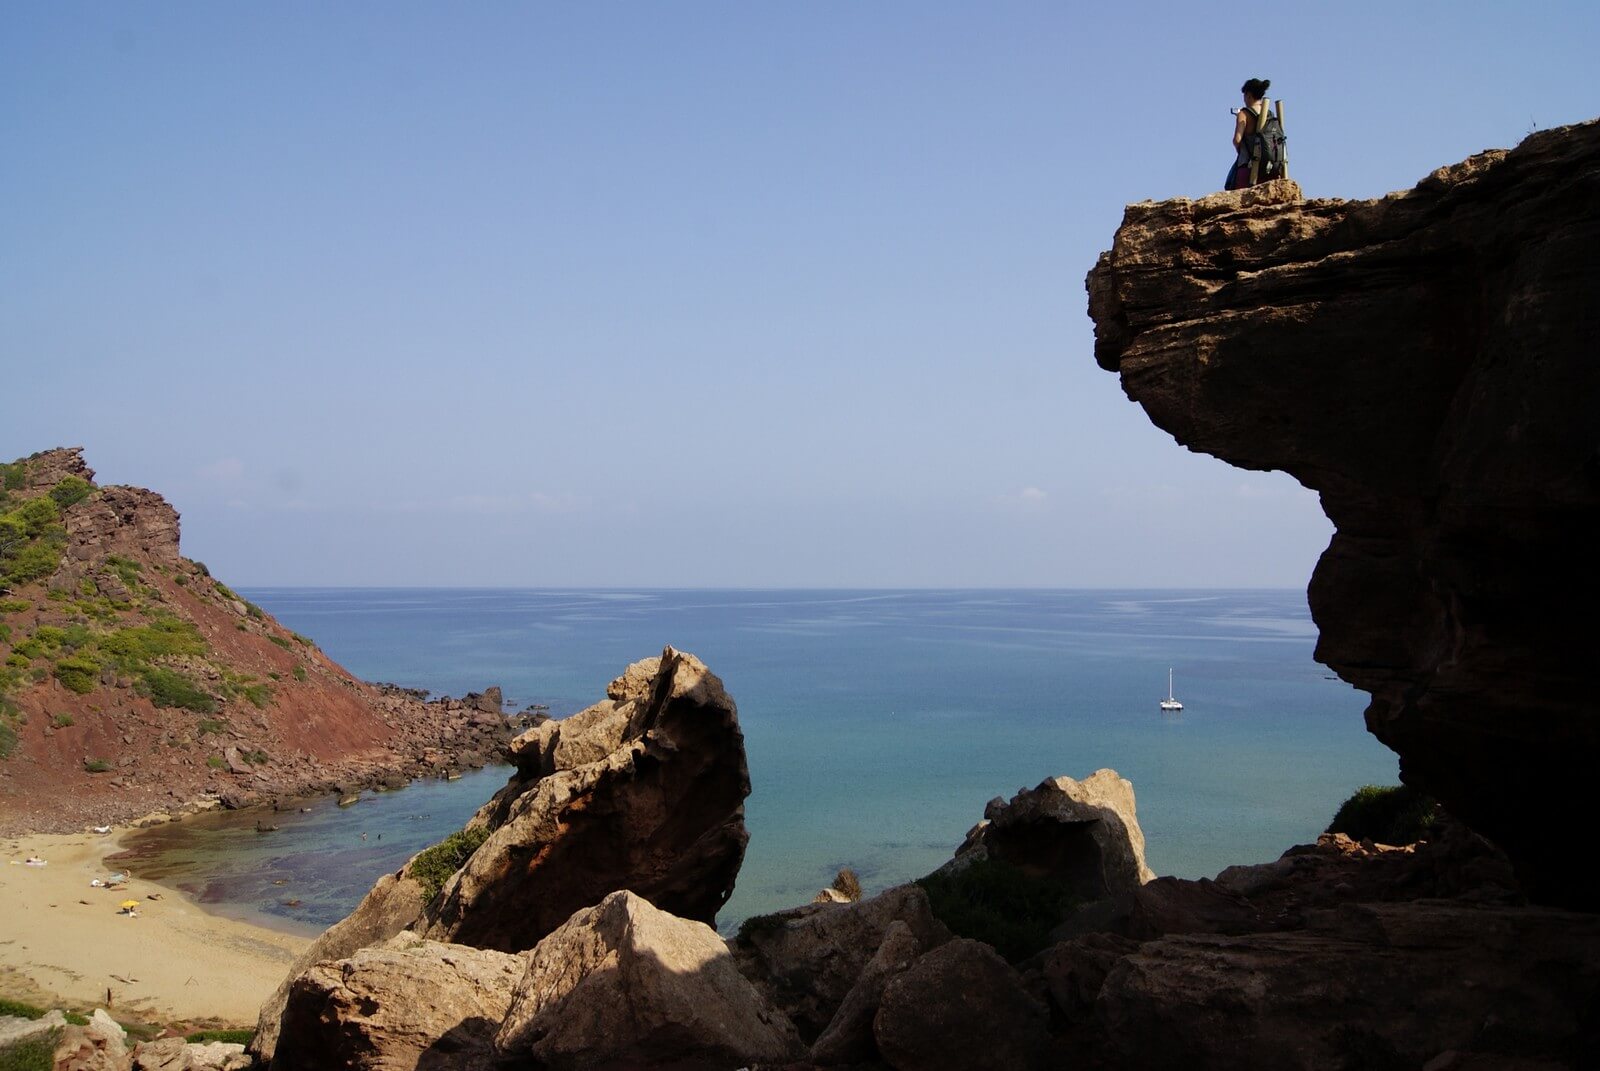 Foto: Spektakulre Kstenformation auf Menorca - Lupe Reisen